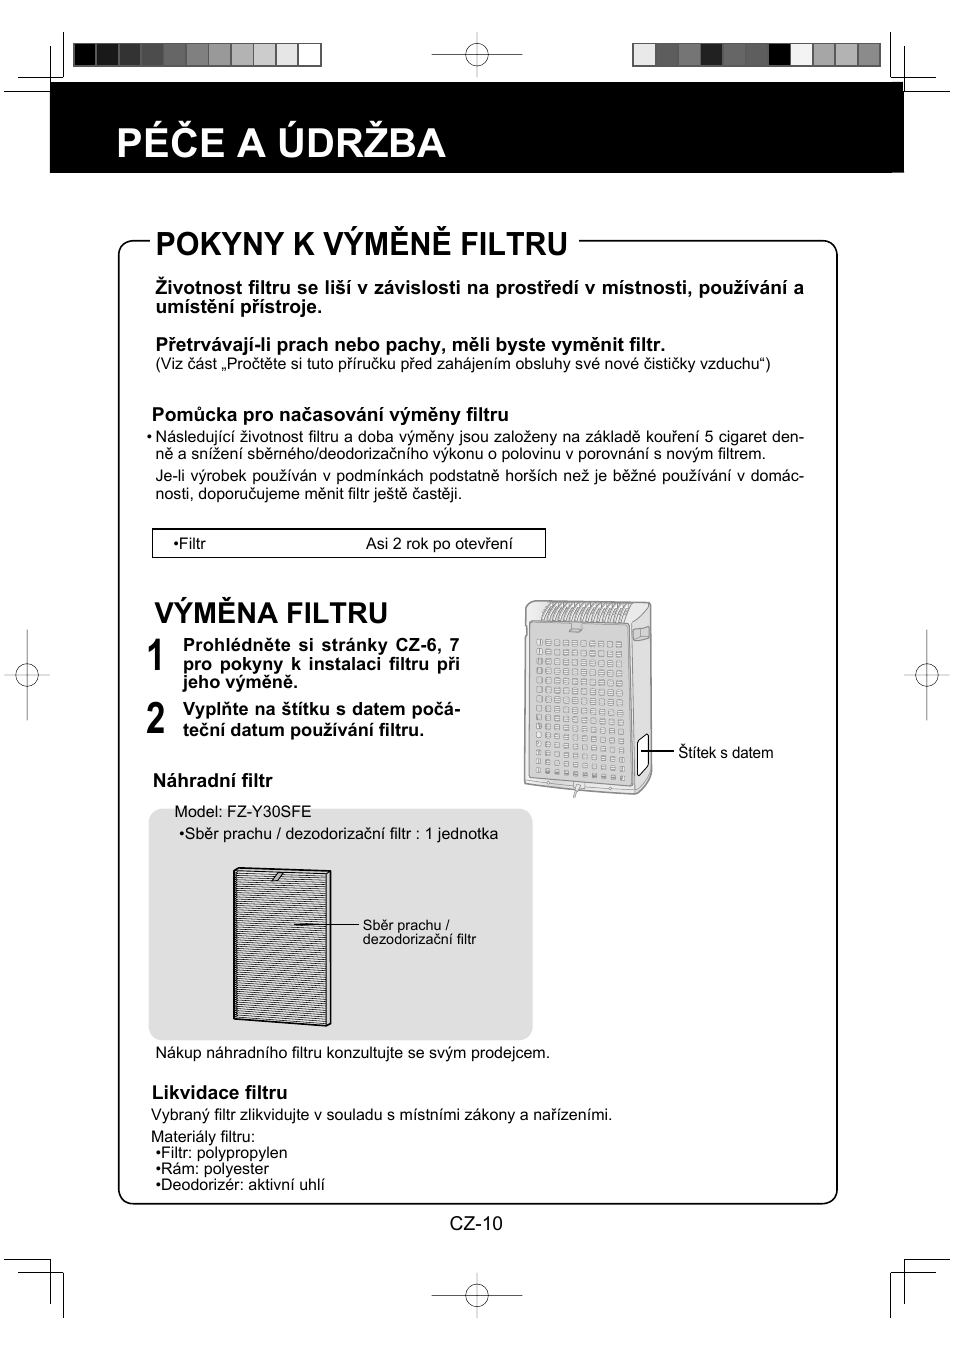 Péče a údržba, Pokyny k výměně filtru, Výměna filtru | Sharp FU-Y30EU User Manual | Page 68 / 113